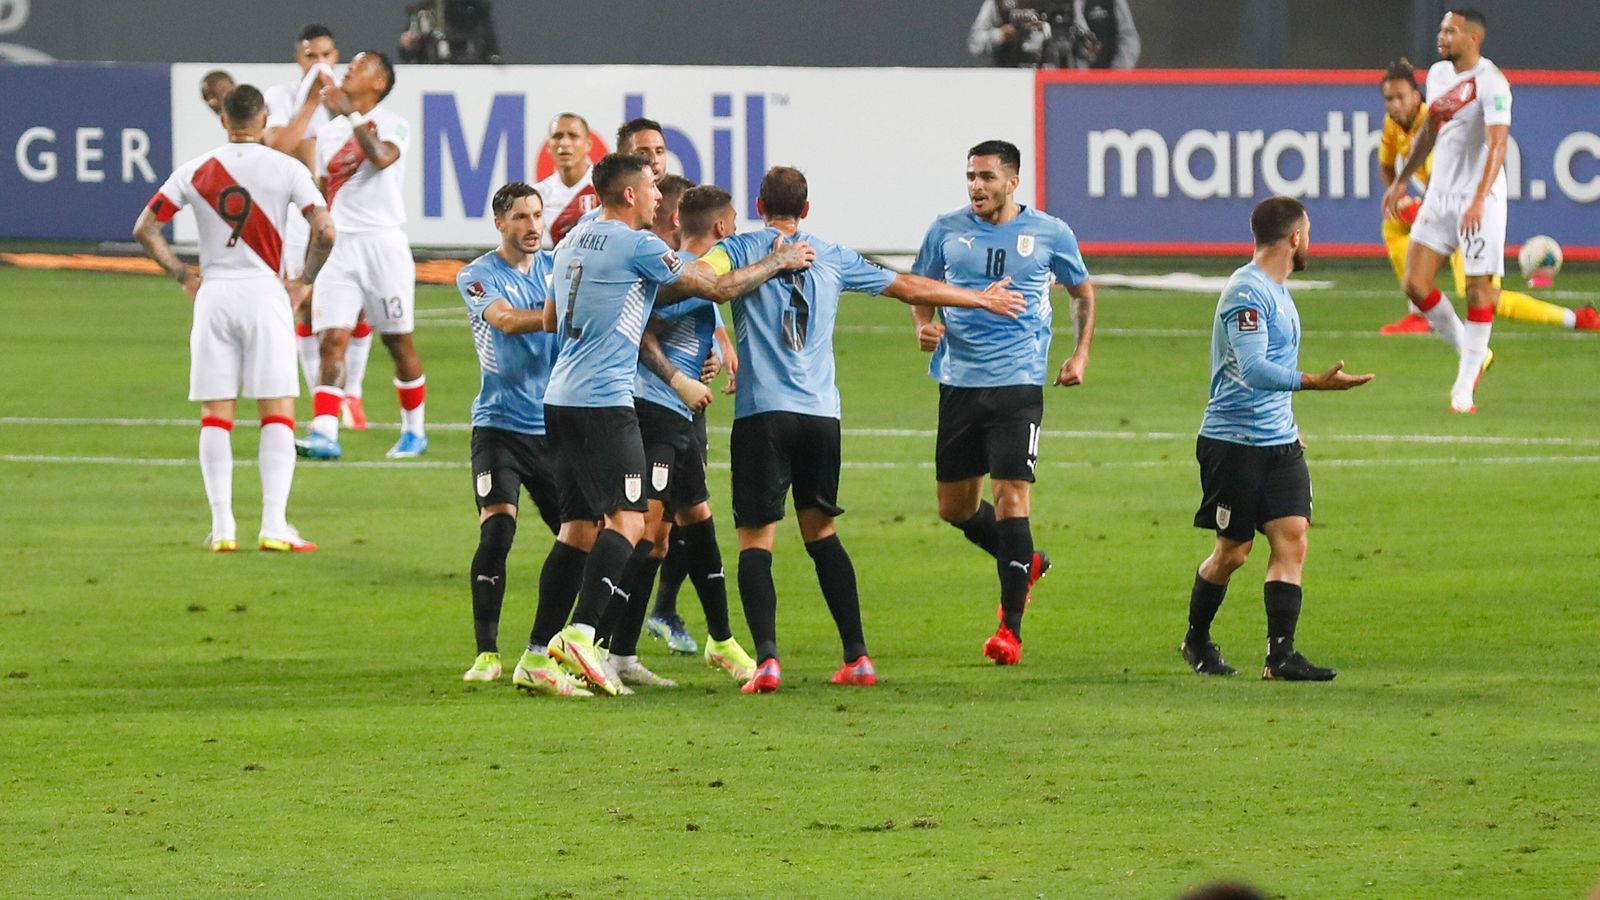 
                <strong>Uruguay</strong><br>
                Auch Uruguay hat es geschafft und sich für die Weltmeisterschaft in Katar qualifiziert. Am vorletzten Spieltag der WM-Qualifikation gewannen die "Celeste" um Stürmerstar Luis Suarez mit 1:0 gegen Peru und lösten somit zum 14. Mal das Ticket für eine Weltmeisterschaft. Giorgian De Arrascaeta von Flamengo Rio de Janeiro erzielte dabei in Montevideo das entscheidende Siegtor. 
              